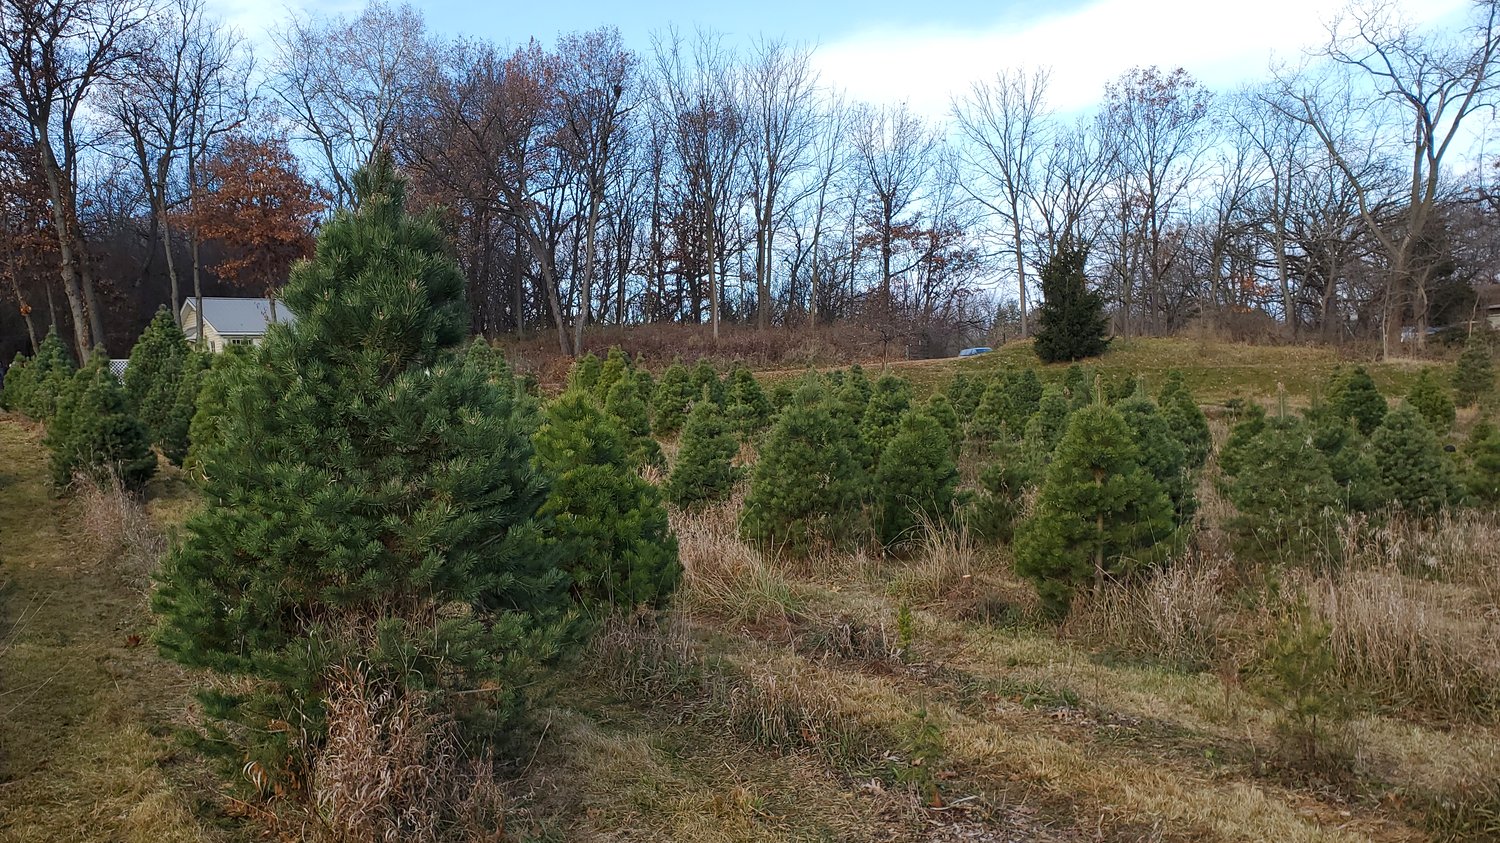 Pine trees at a Christmas tree farm.